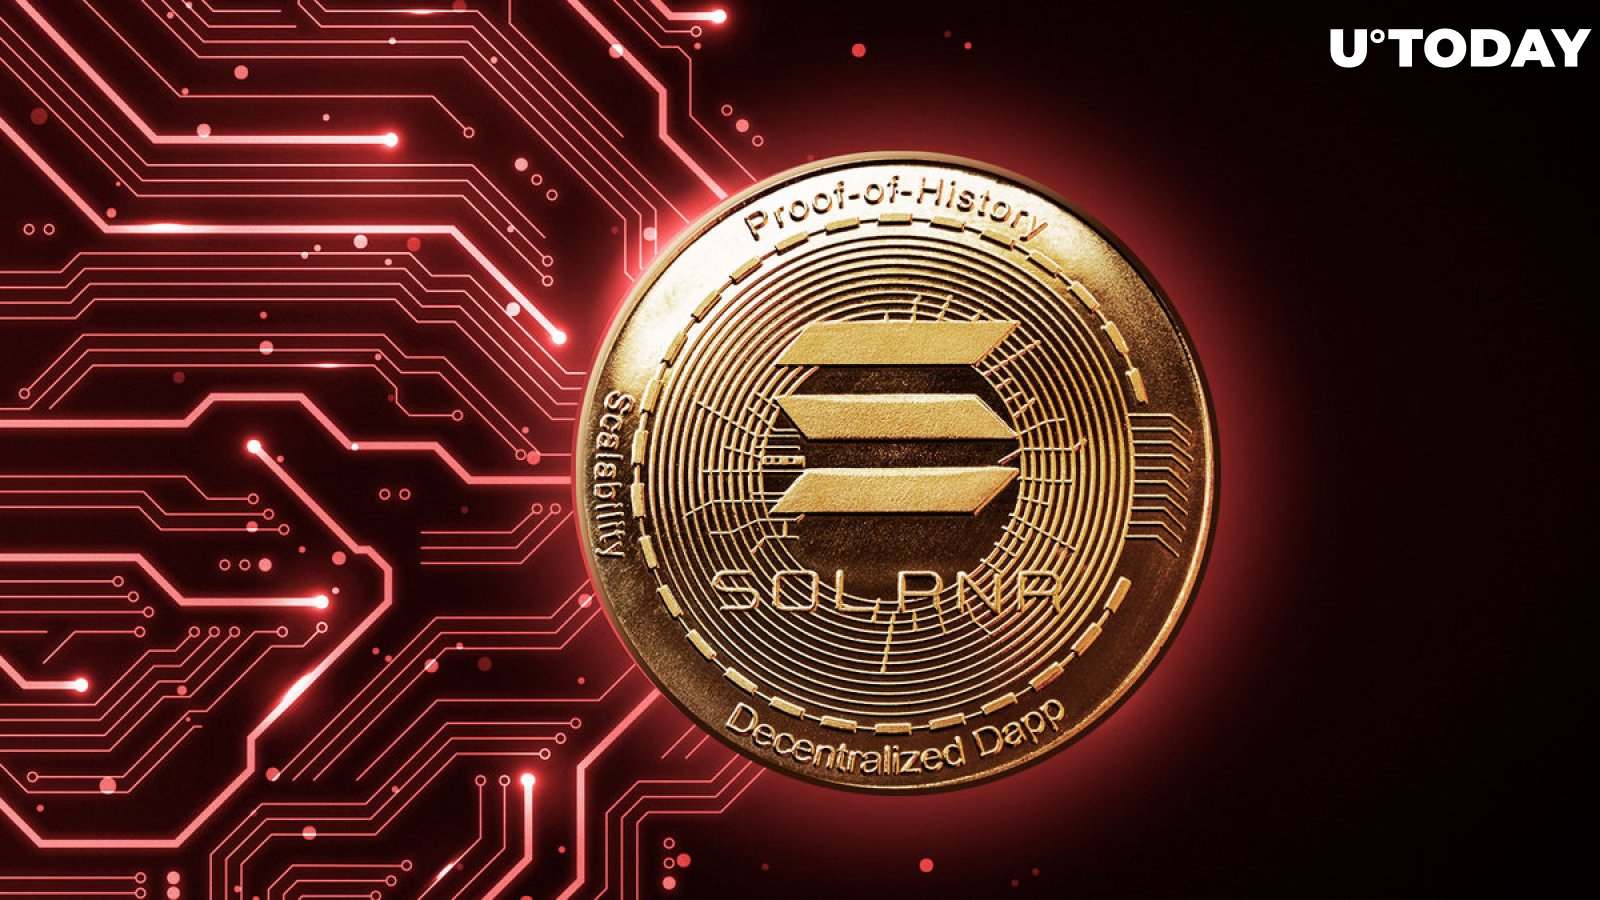 Dieser Solana (SOL) Meme Coin zerstört Portfolios: Details